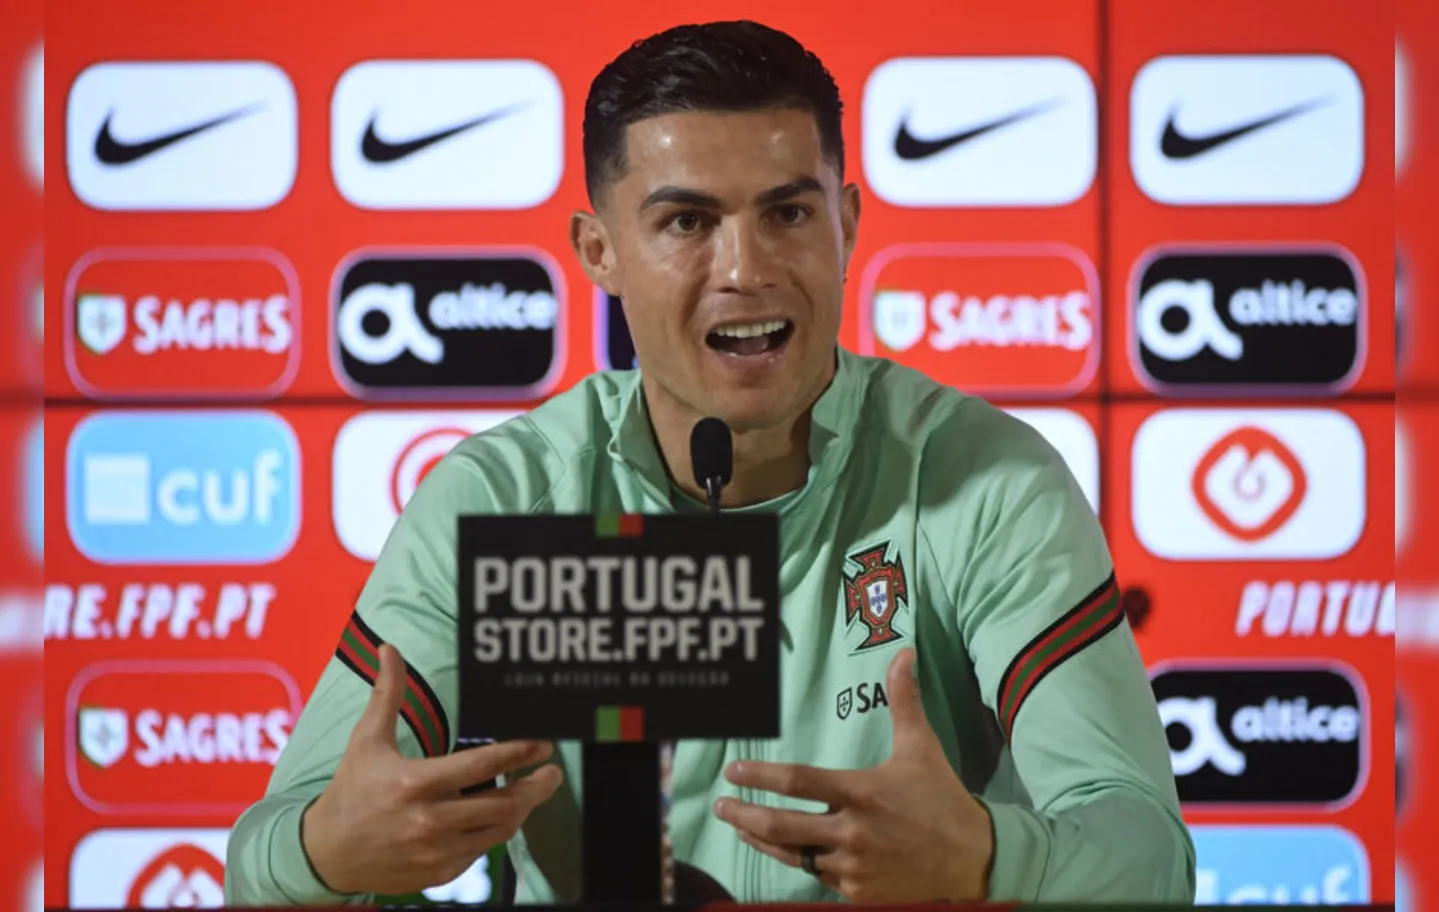 Durante coletiva, o astro Cristiano Ronaldo pregou respeito ao adversário, apesar de sua evidente superioridade